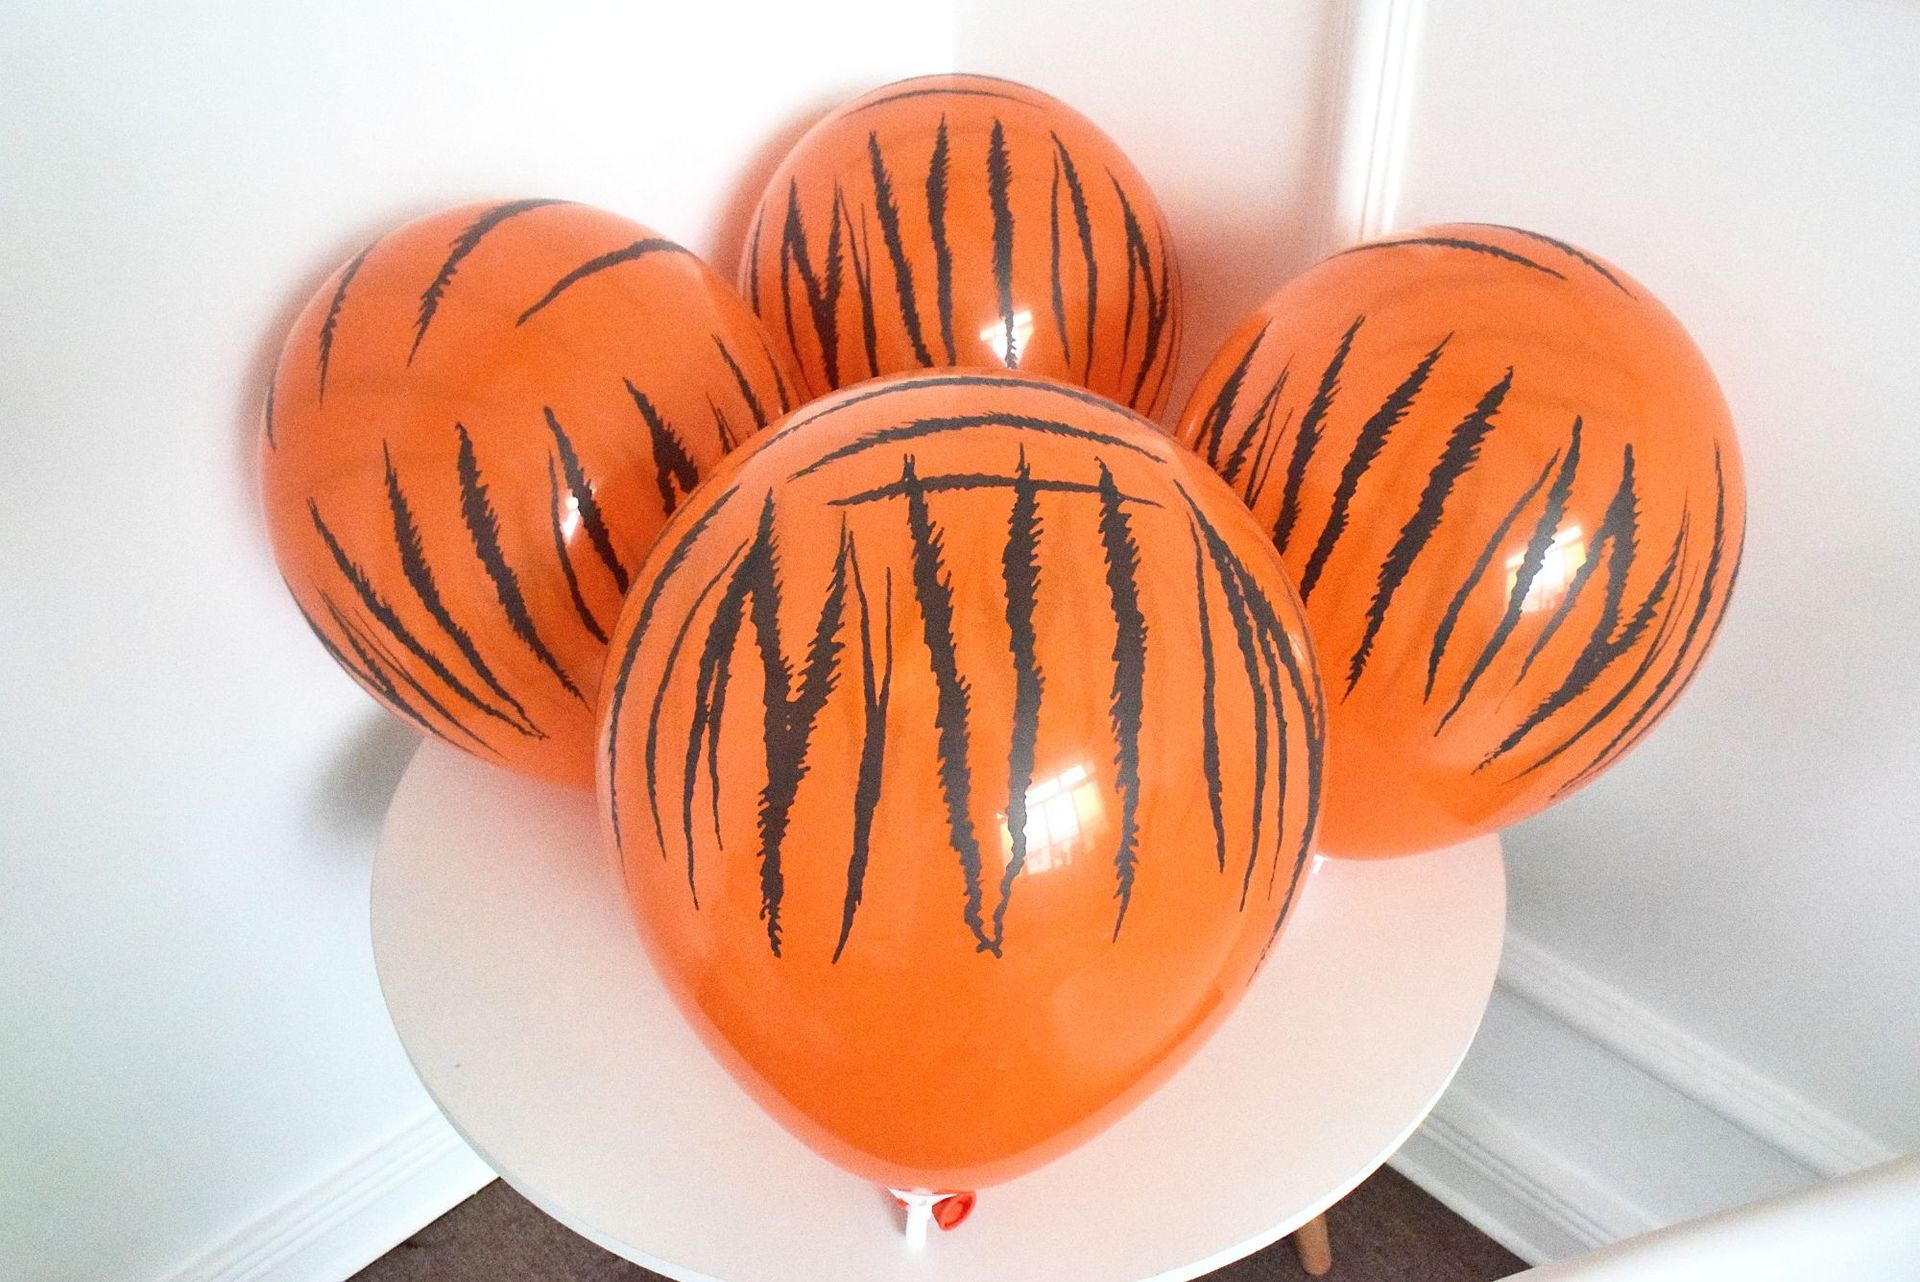 100 stk fortykket 12- tommer 3.2- gram latex ballon tegneserie ko vandmelon leopard print ballon